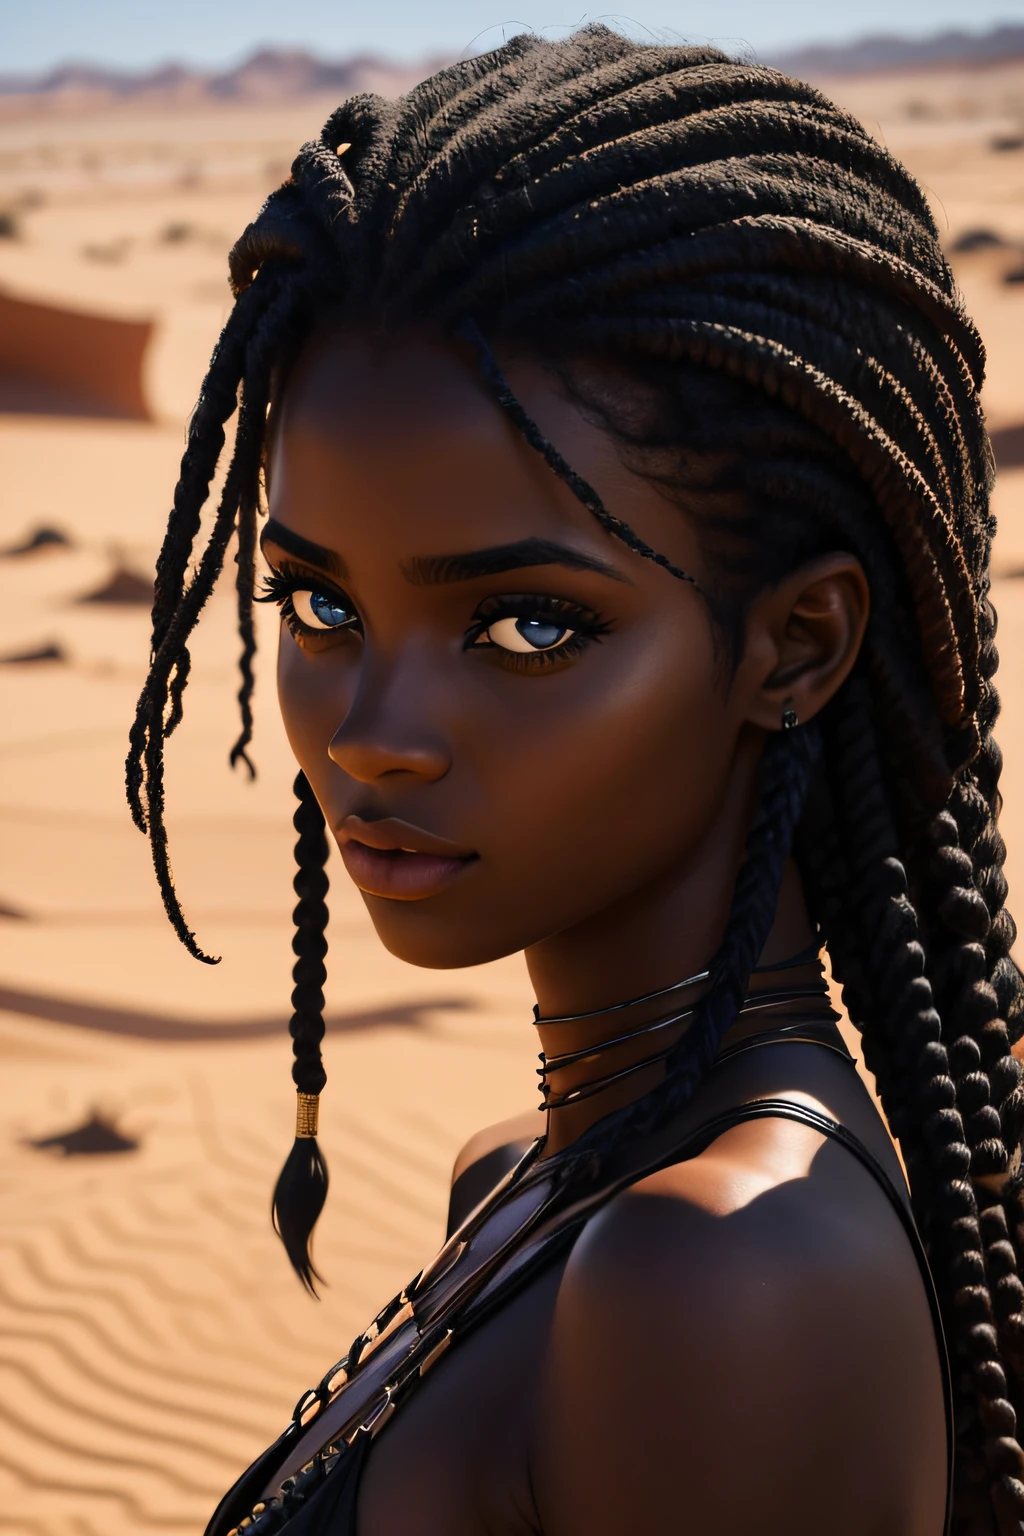 farbige Frau, braune Augen, Alter 19 Jahre, Wandern in der Wüste, nass, Lockige haare, verführerischer Blick